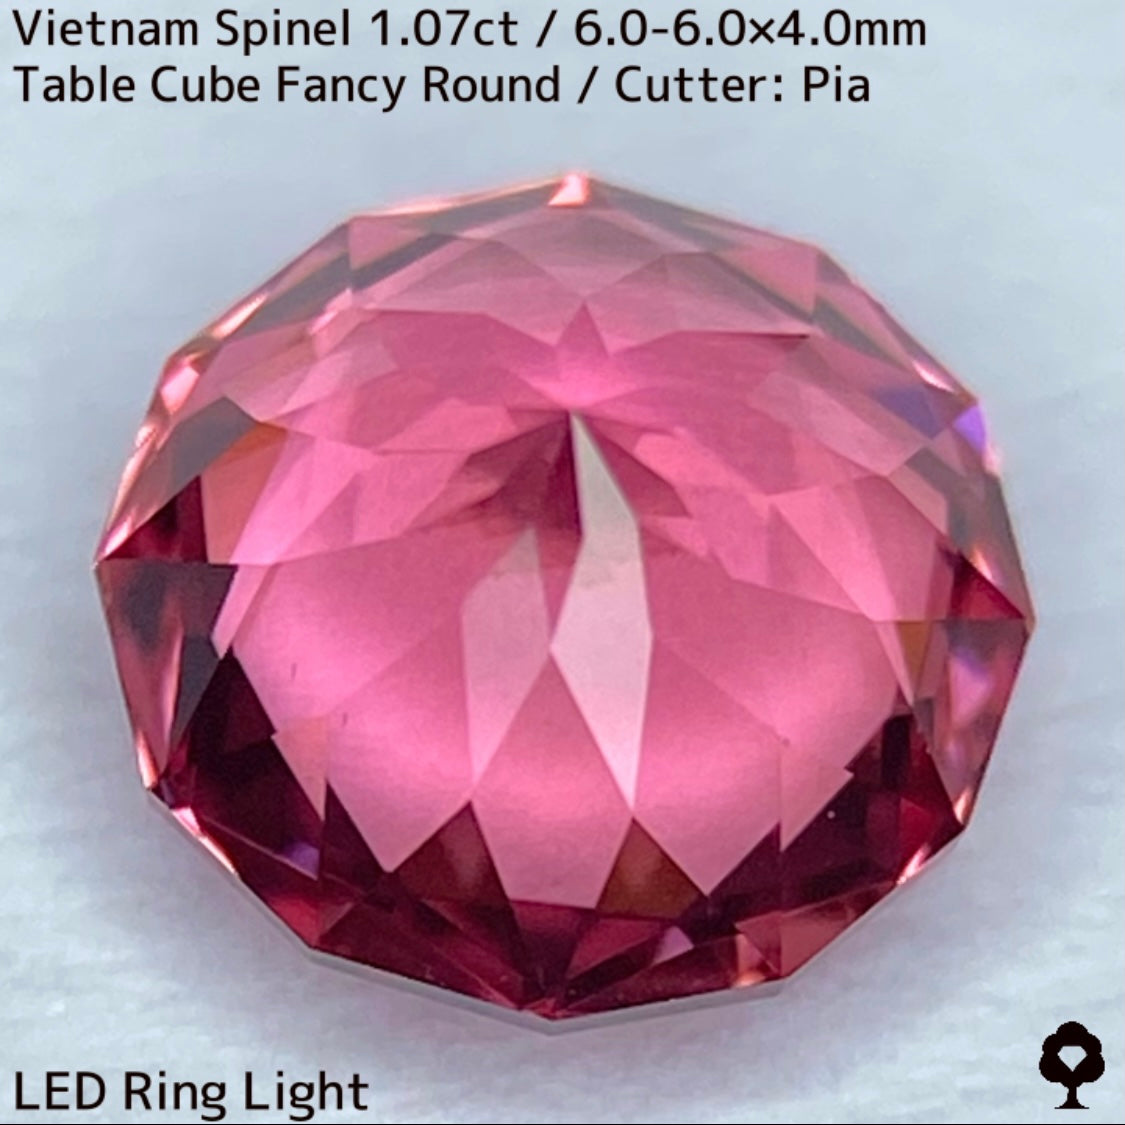 ベトナム産スピネル1.07ct★原石からつくりあげた美しすぎるピンクと石質の一級品1ctアップ